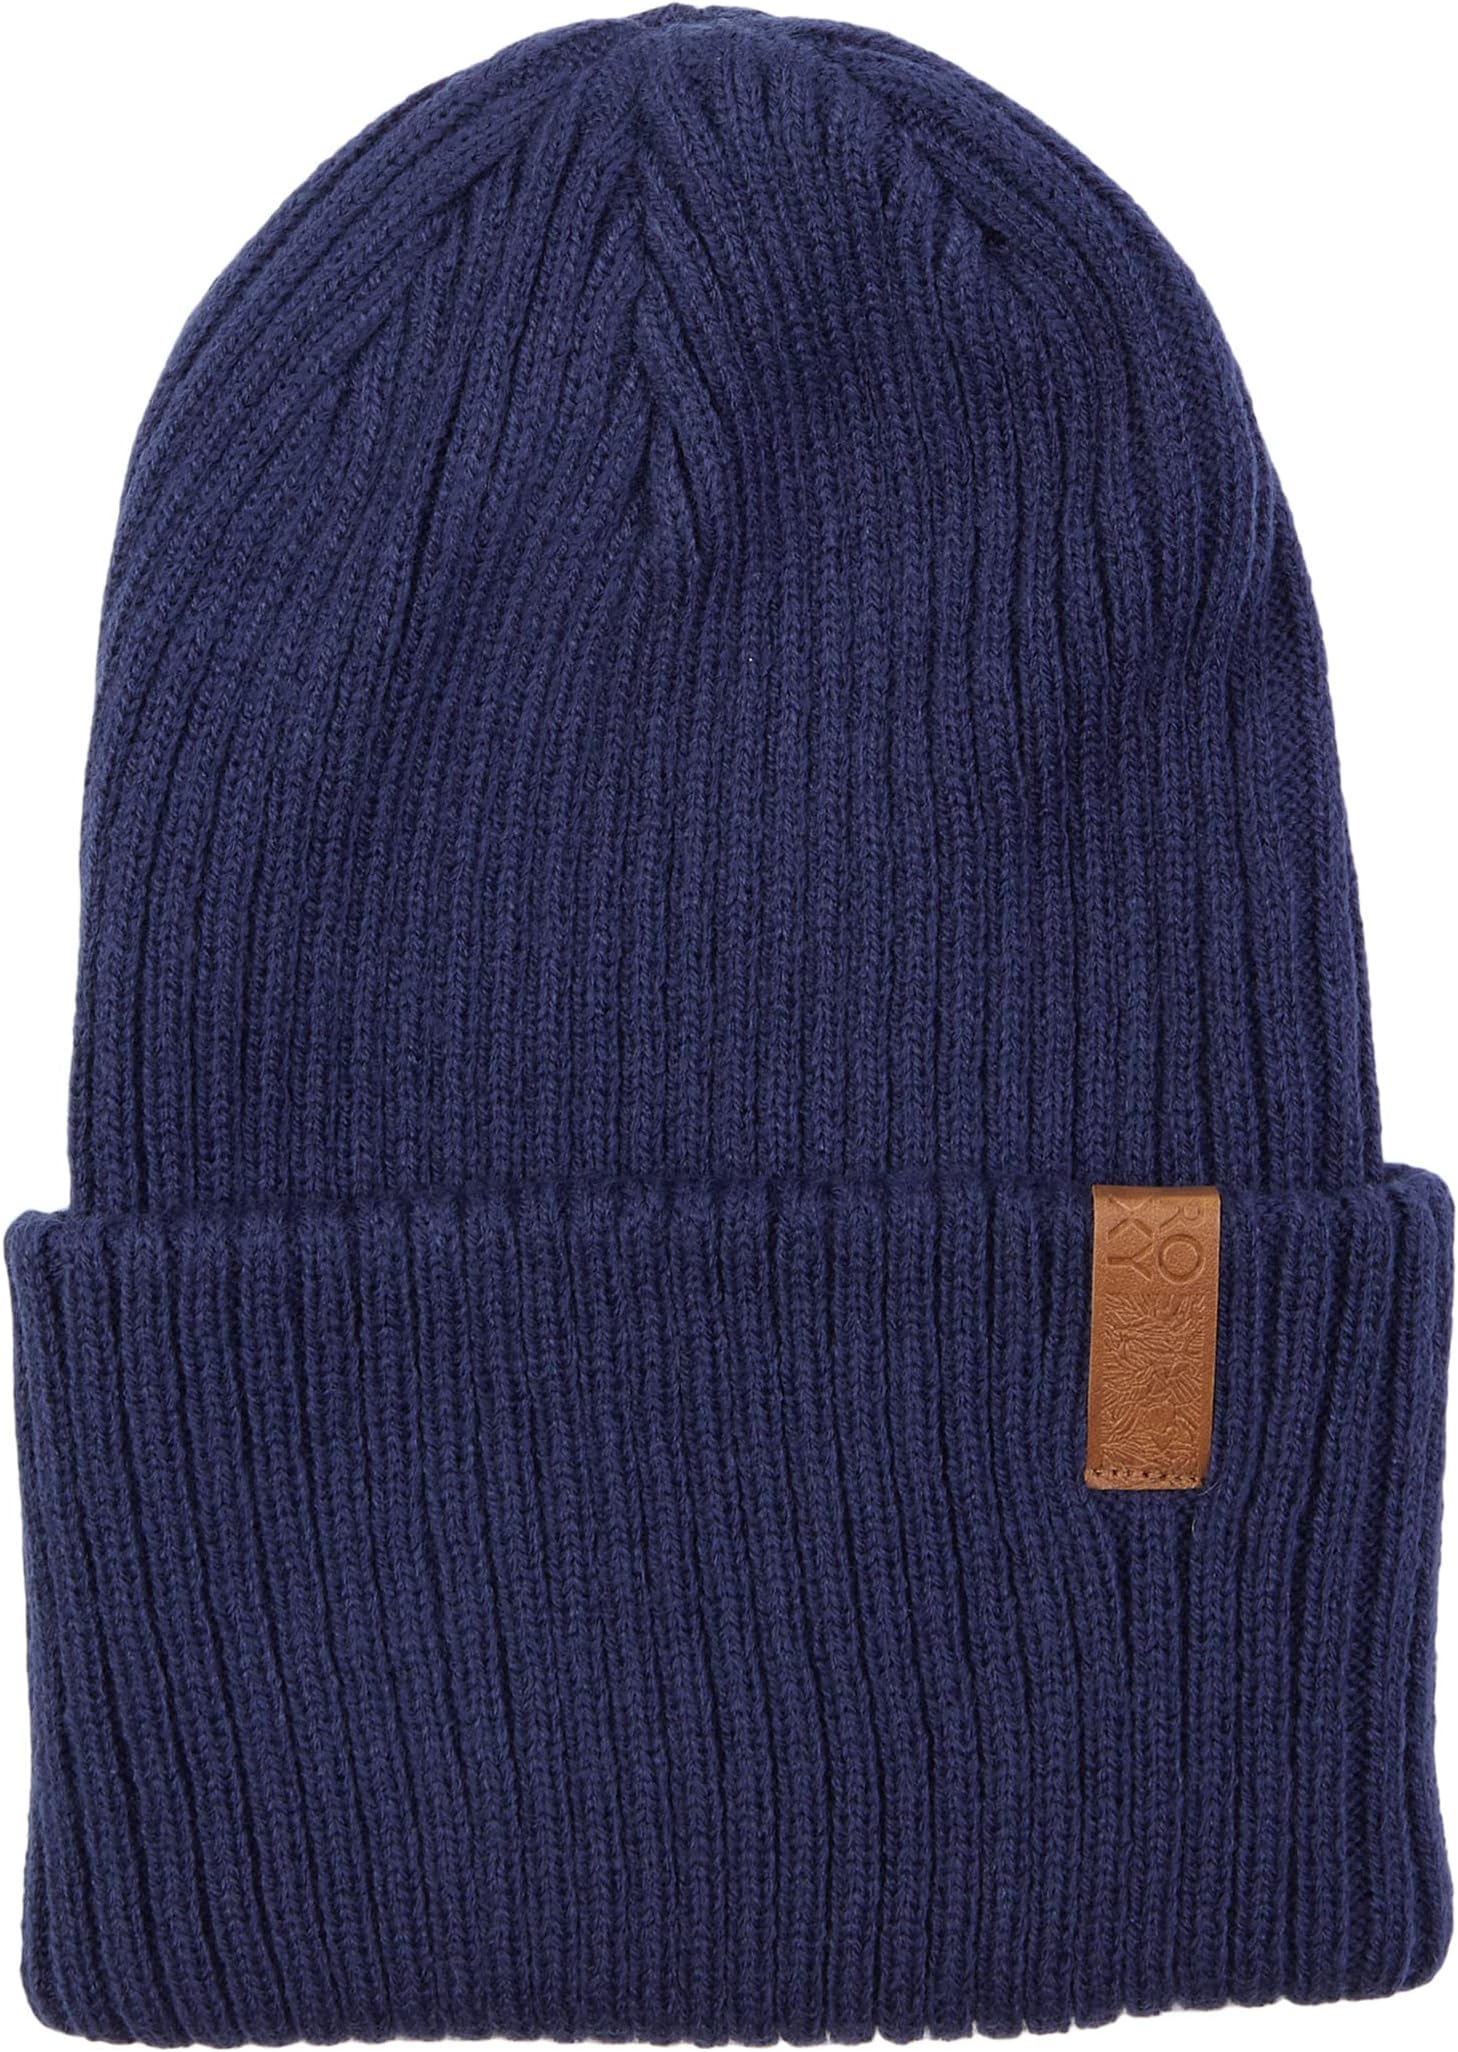 шапка Dynabeat Roxy, цвет Medieval Blue шапка бини roxy dynabeat цвет оранжевый размер one size